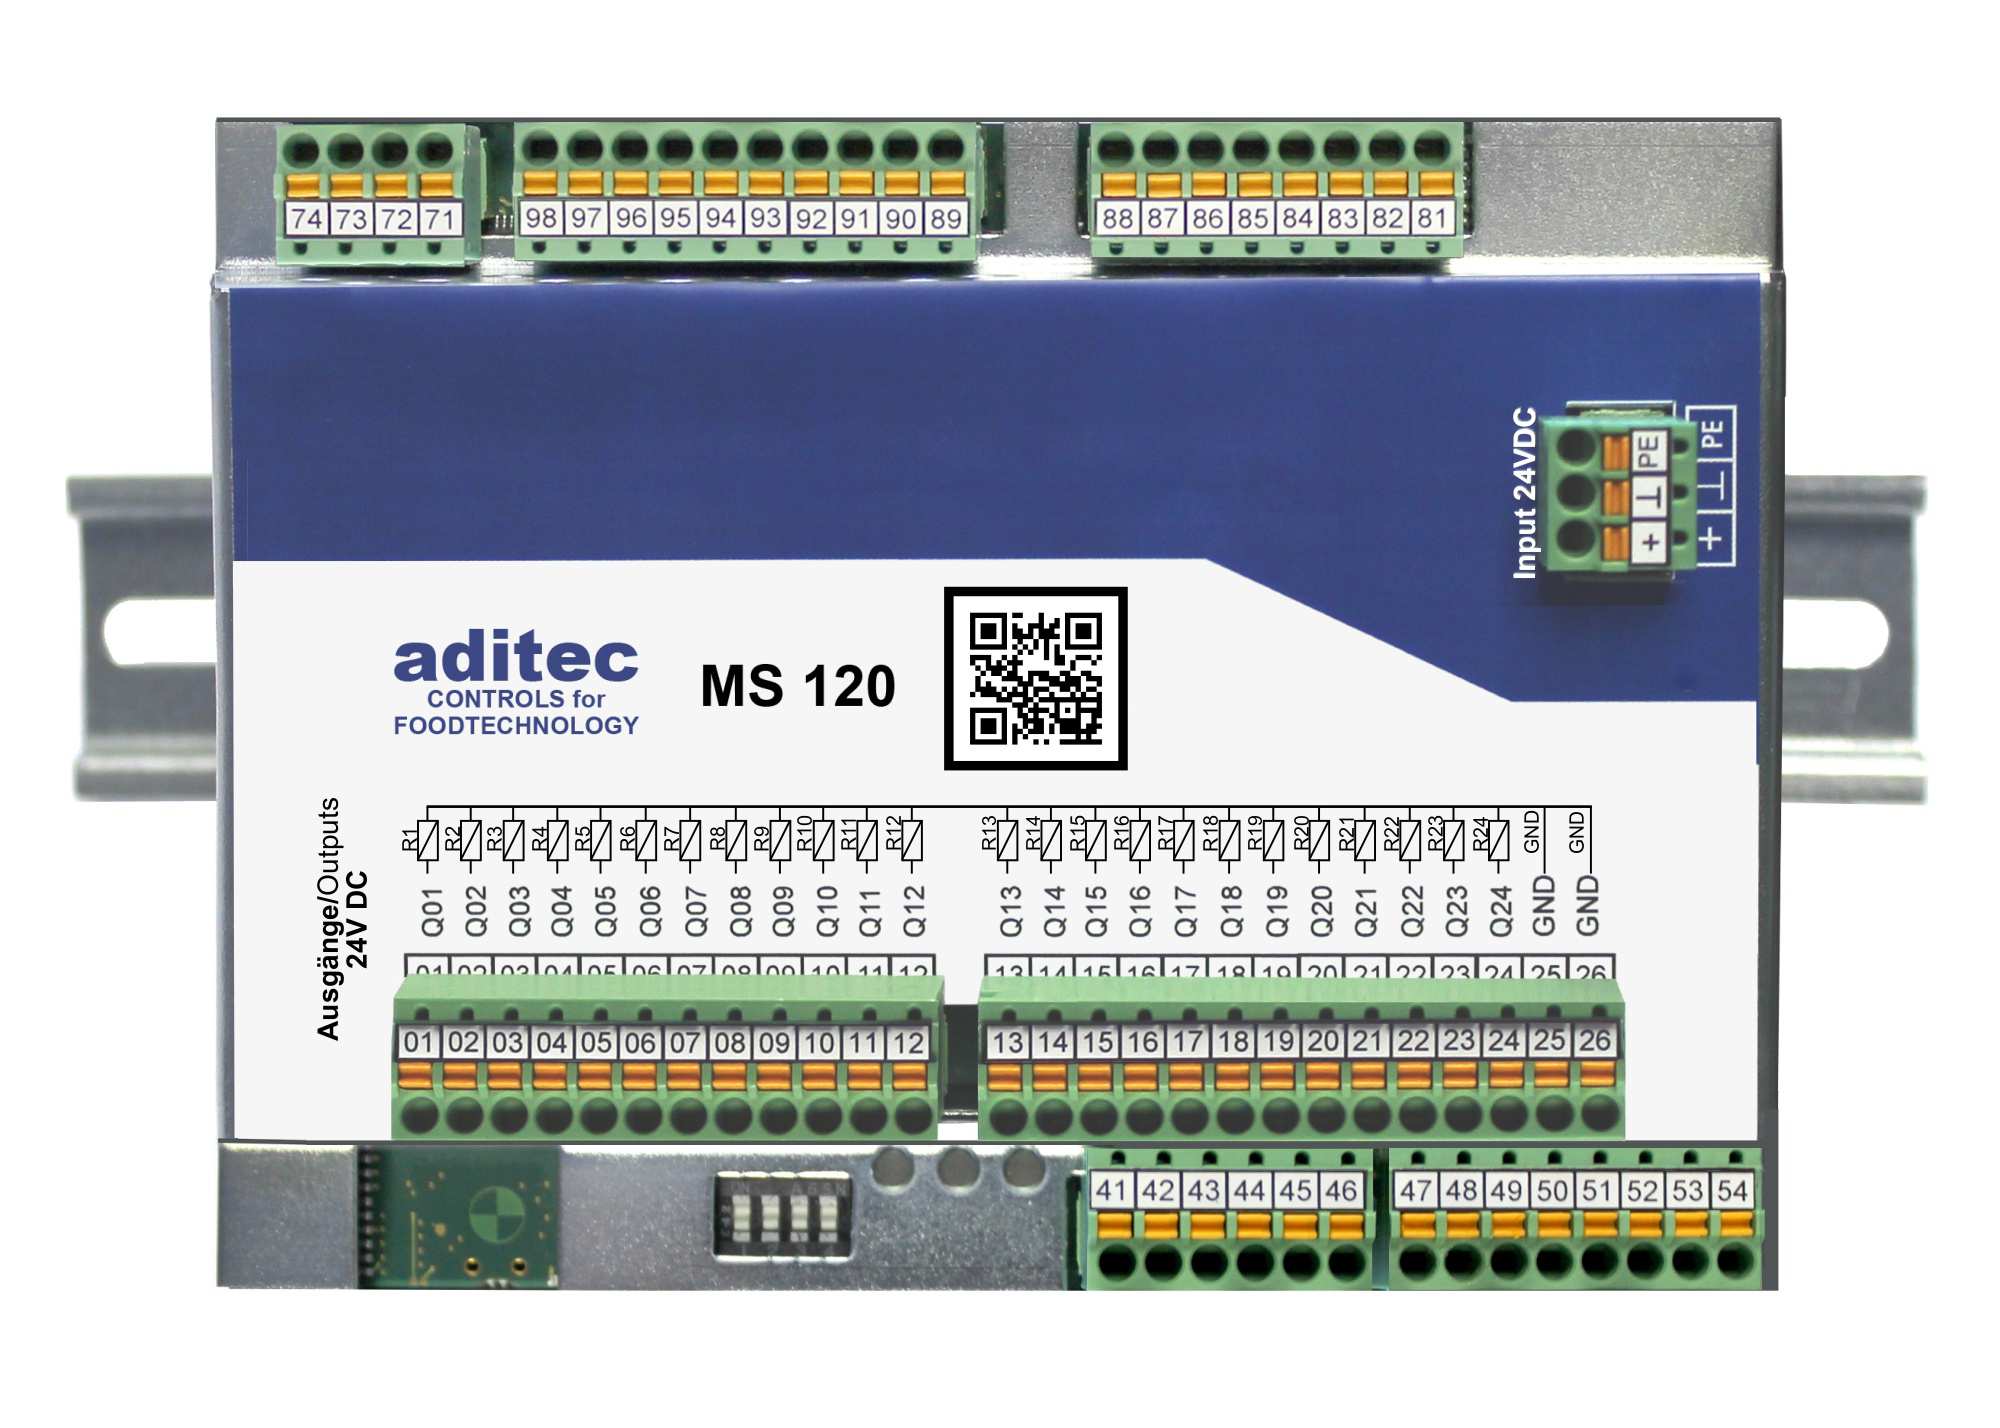 Sterownik aditec MS120 współpracuje z panelami dotykowym aditec TP811/TP1011/TP1211 ( patrz odpowiednia karta katalogowa).